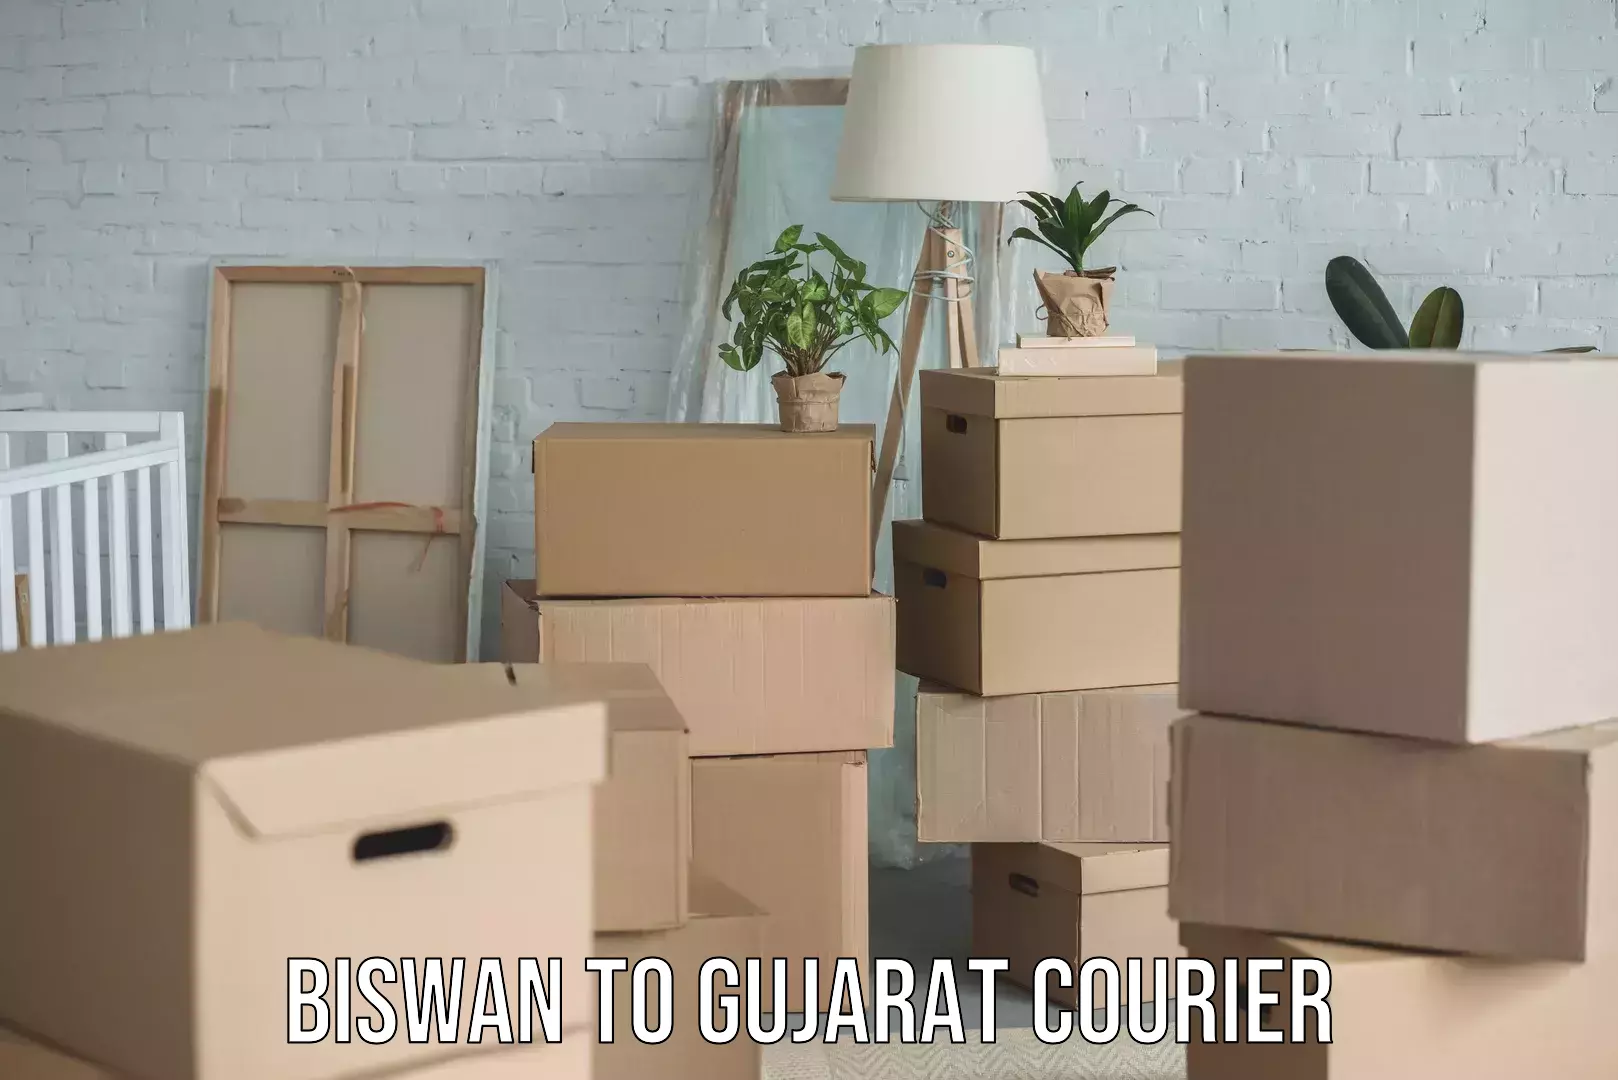 Door-to-door shipment in Biswan to Gujarat